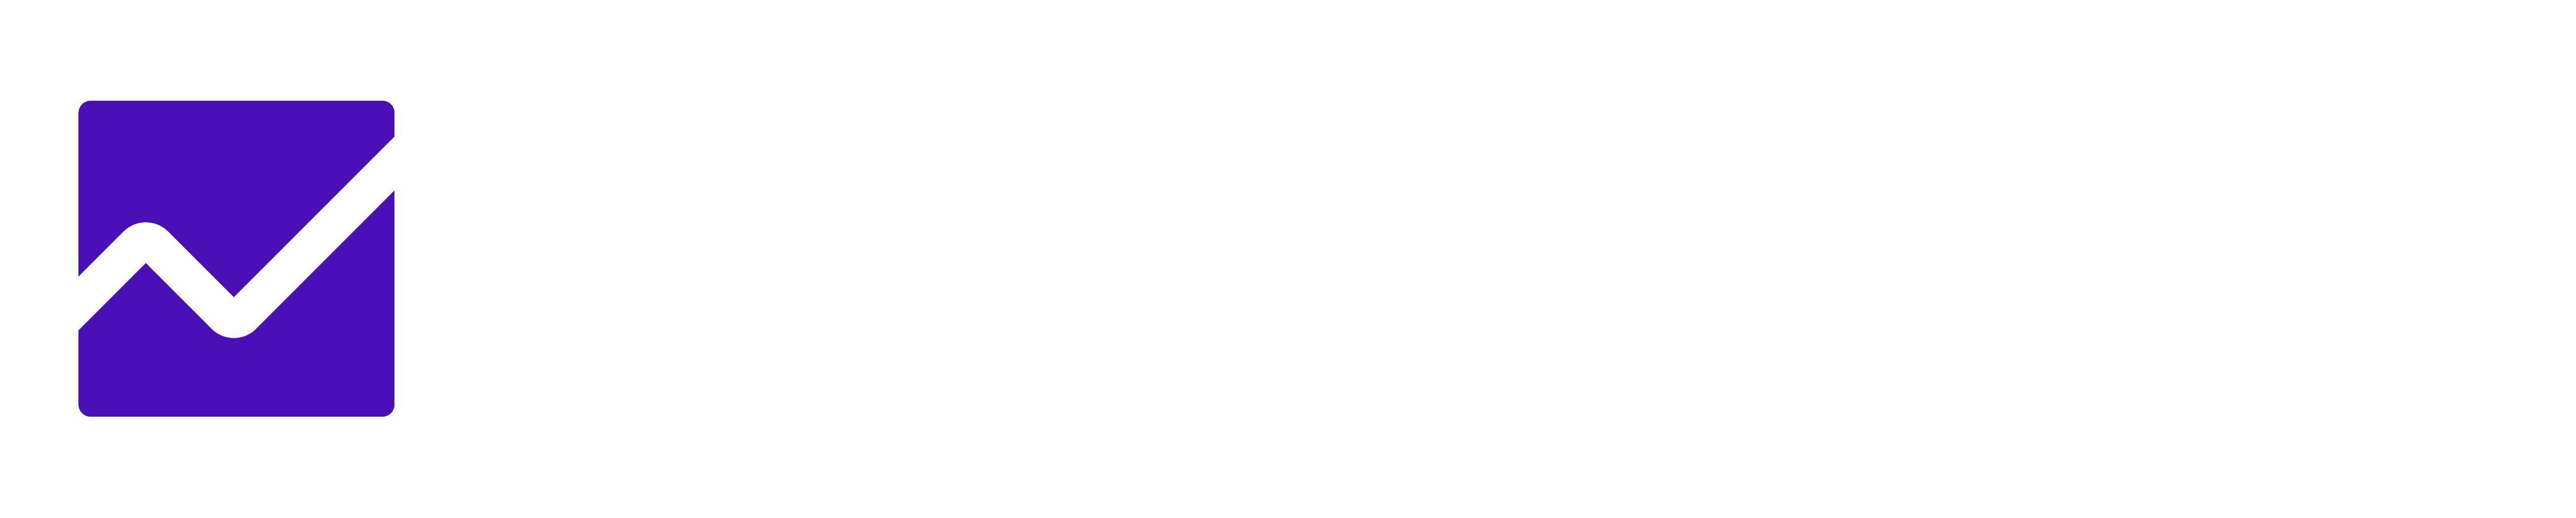 Illuminex